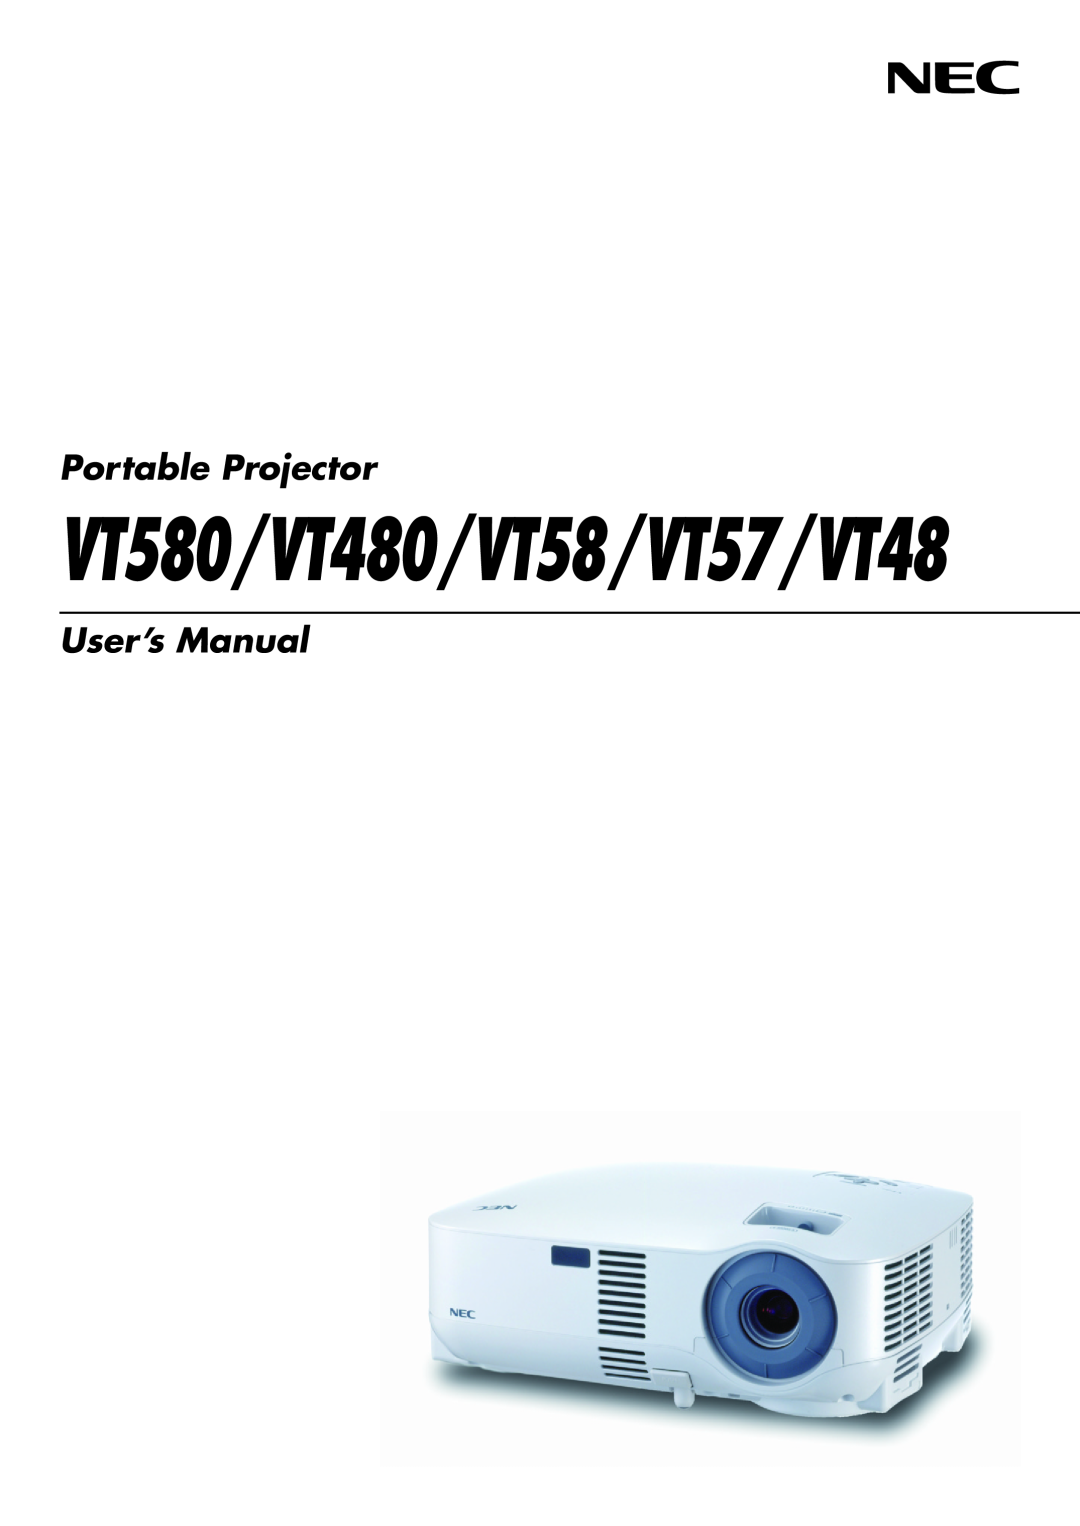 NEC manual VT580/VT480/VT58/VT57/VT48, Portable Projector, User’s Manual 